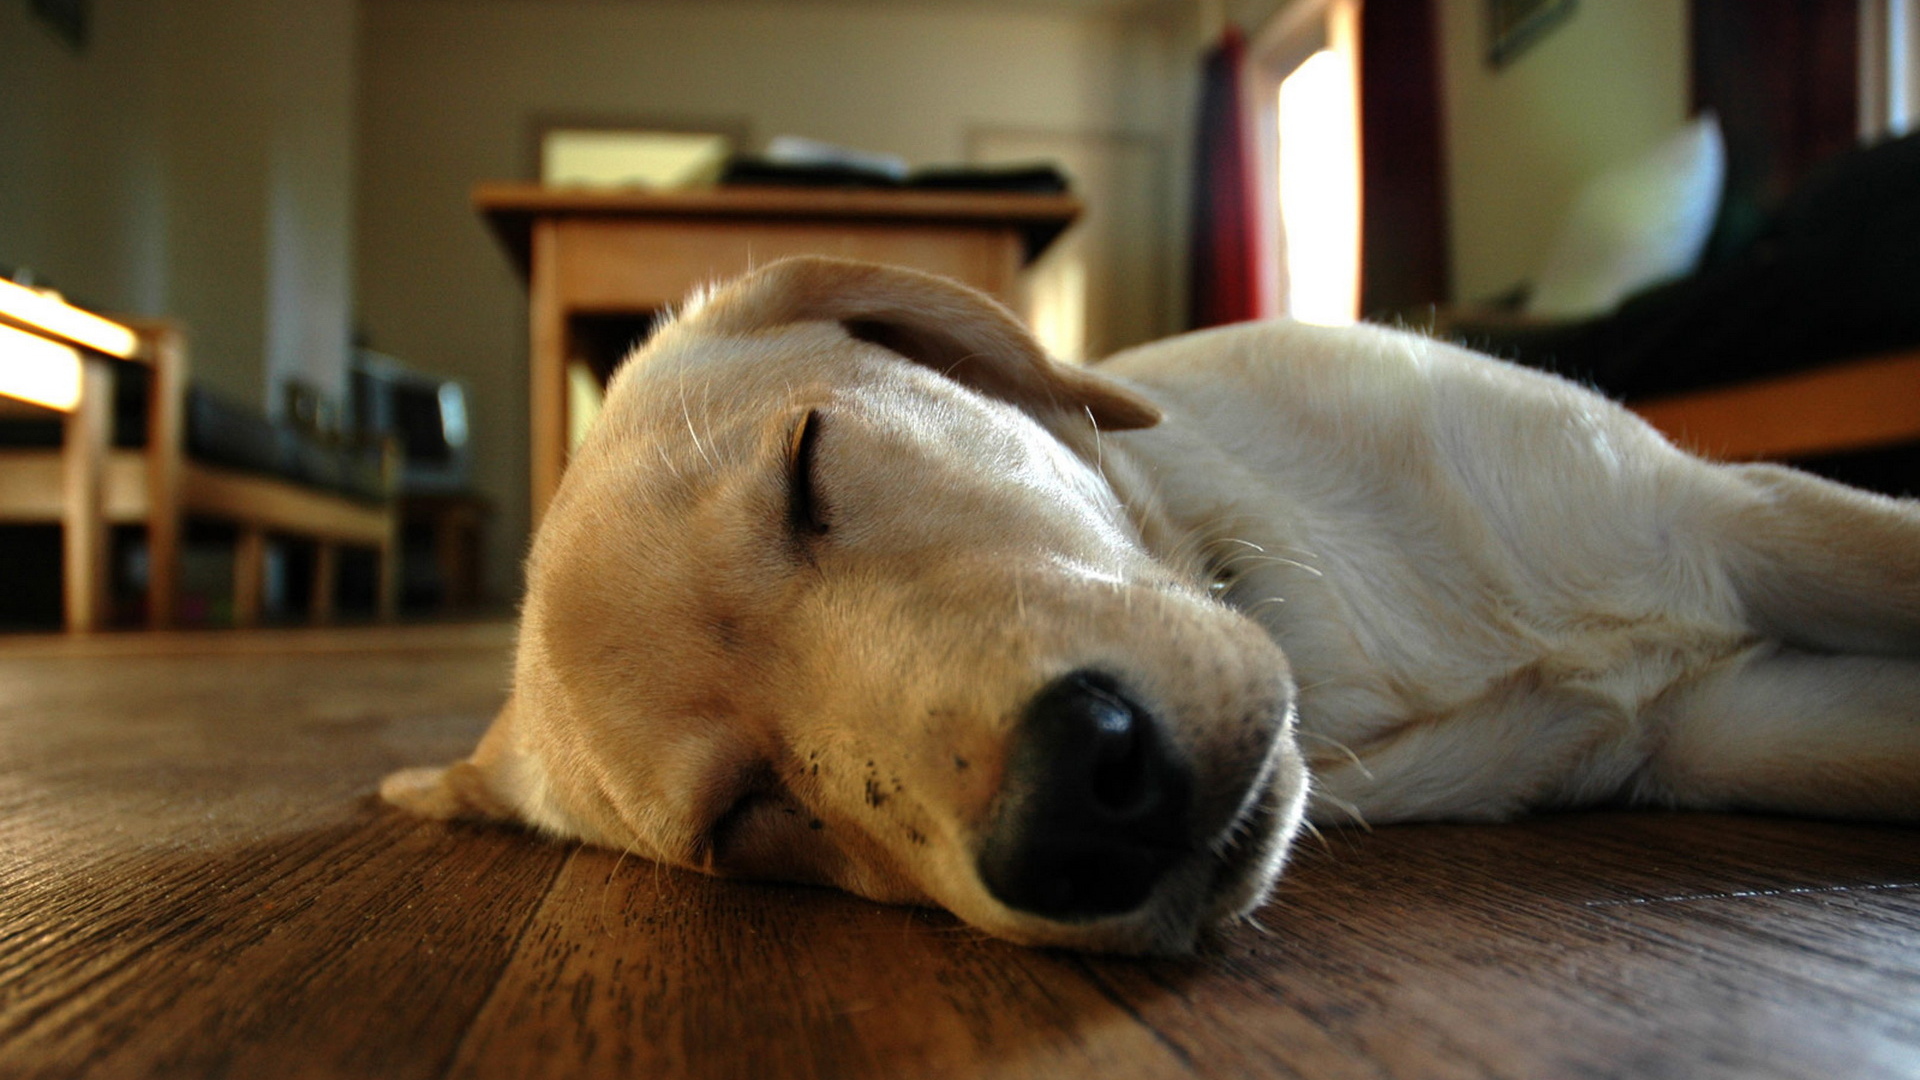 Sleeping dog on floor